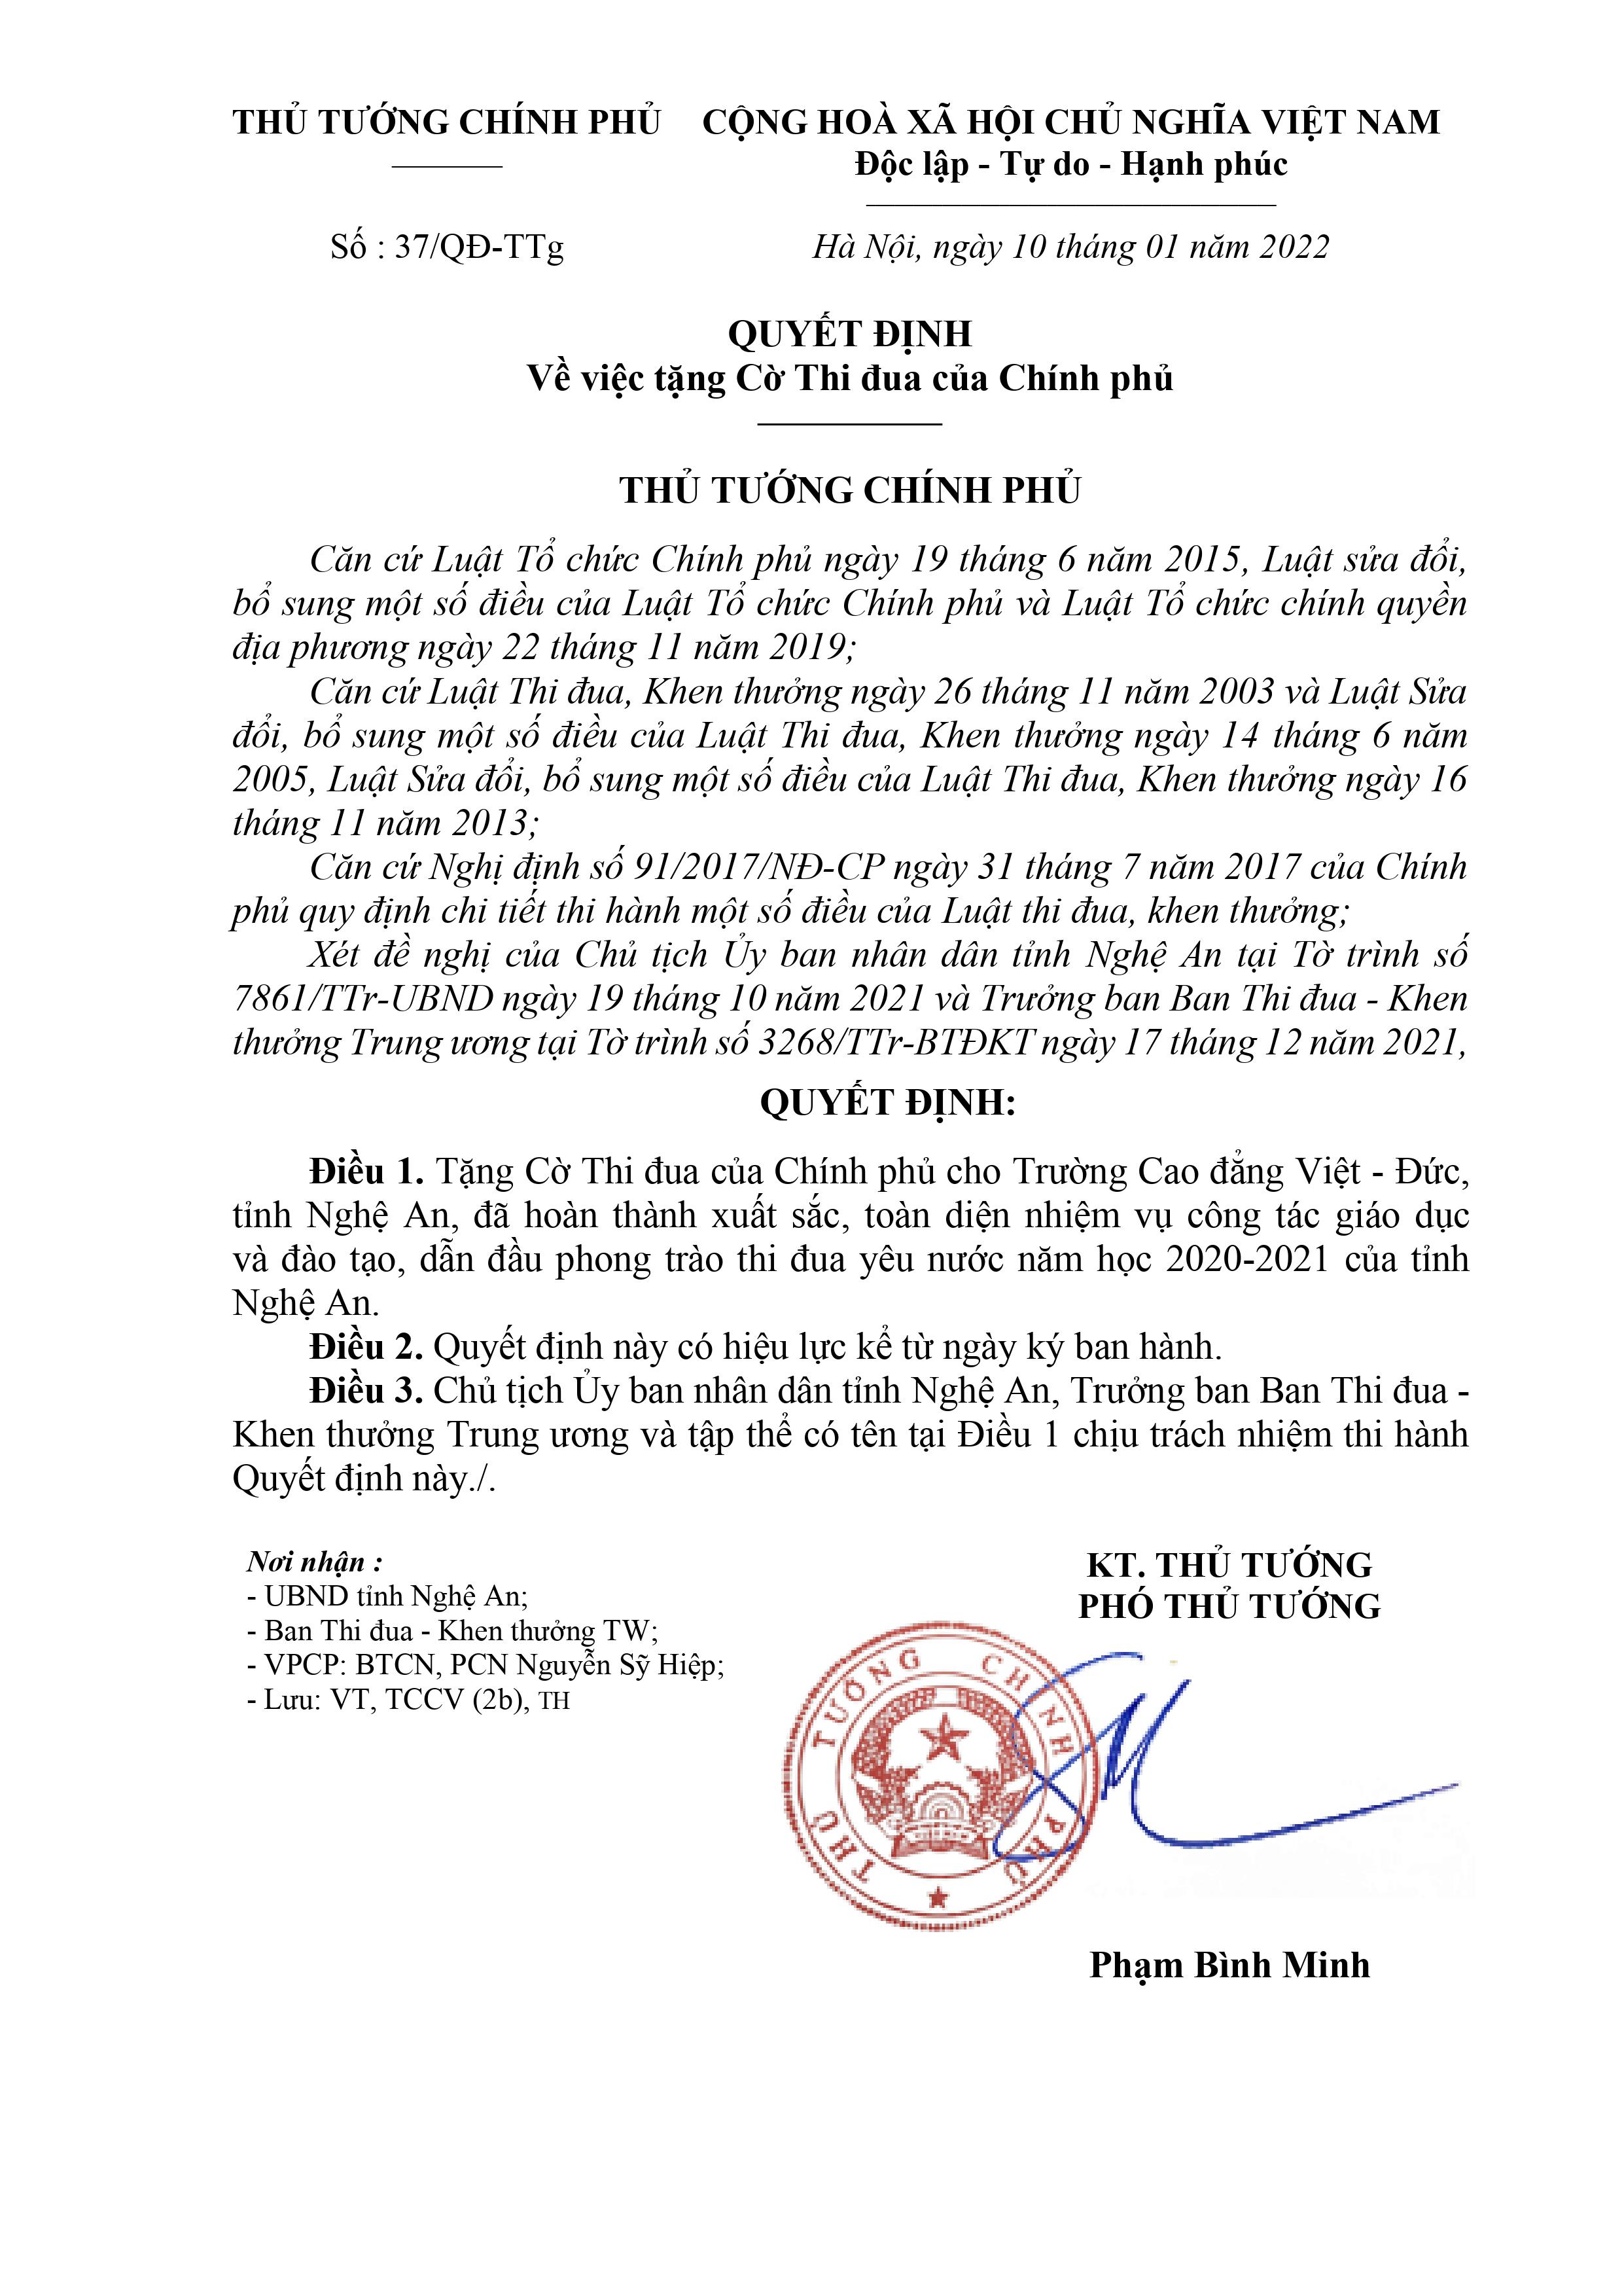 Quyết định số 37/QĐ-TTg ngày 10/01/2022 của Thủ tướng Chính phủ về việc tặng Cờ Thi đua của Chính phủ cho Trường Cao đẳng Việt - Đức Nghệ An đã hoàn thành xuất sắc, toàn diện nhiệm vụ công tác giáo dục và đào tạo, dẫn đầu phong trào thi đua yêu nước 